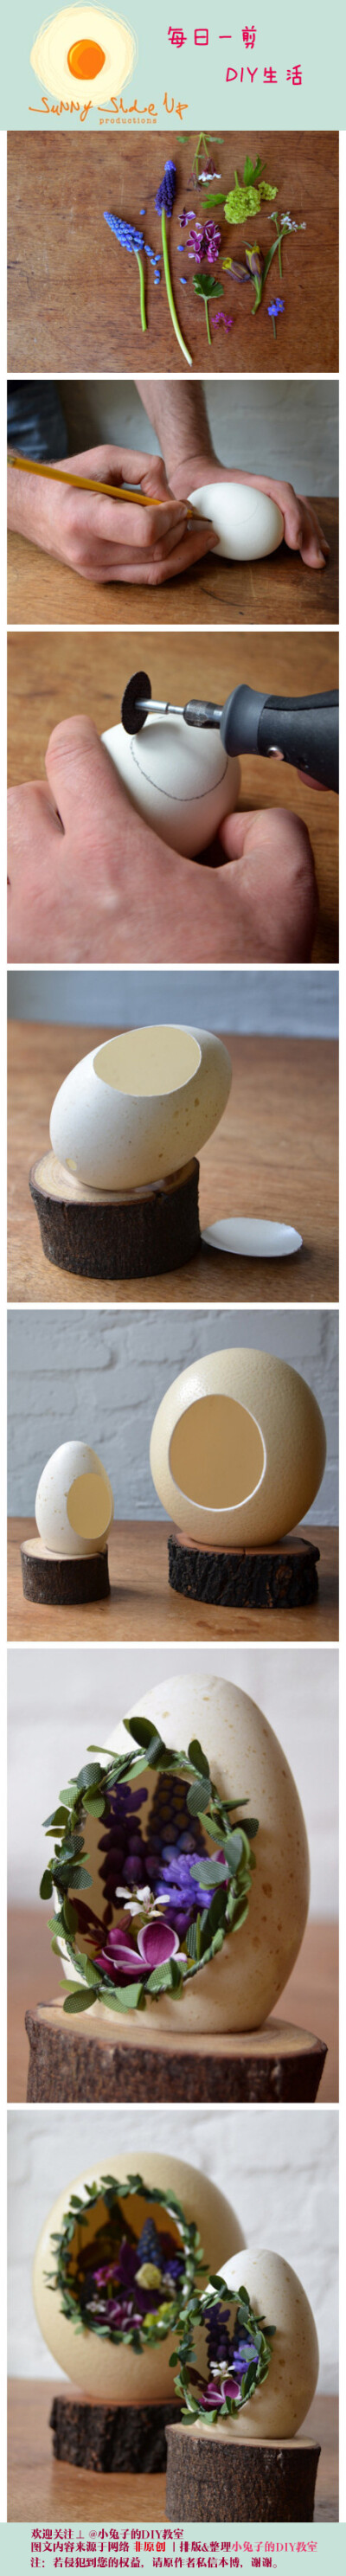 【蛋壳的艺术】挖鸡蛋着实有点难办。。。啧啧